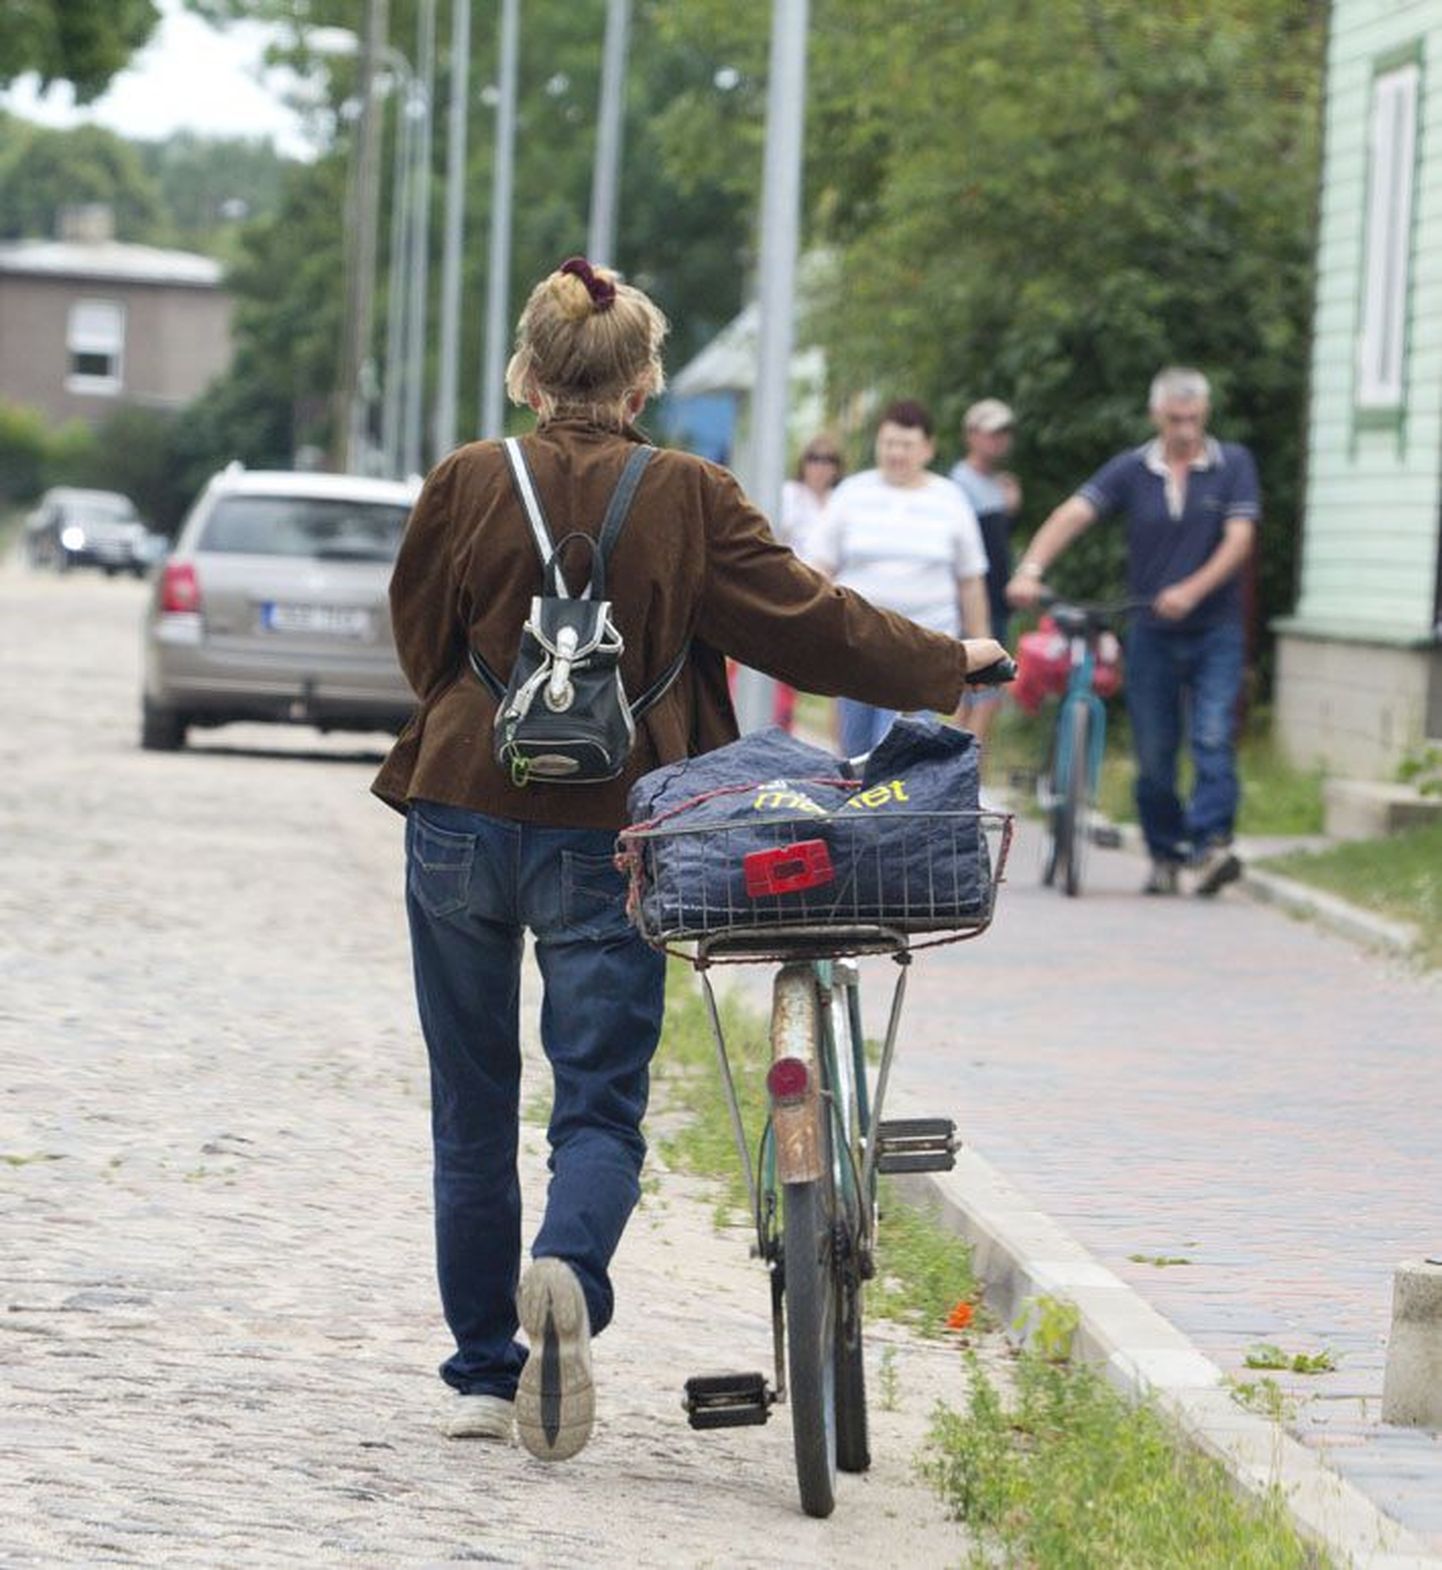 Virumaa Teataja kiirvisiit tänavatele andis tulemuseks hulga ilma kellata jalgrattaid, signaalkell oli küljes ainult ühel kondijõul liikuval aparaadil.